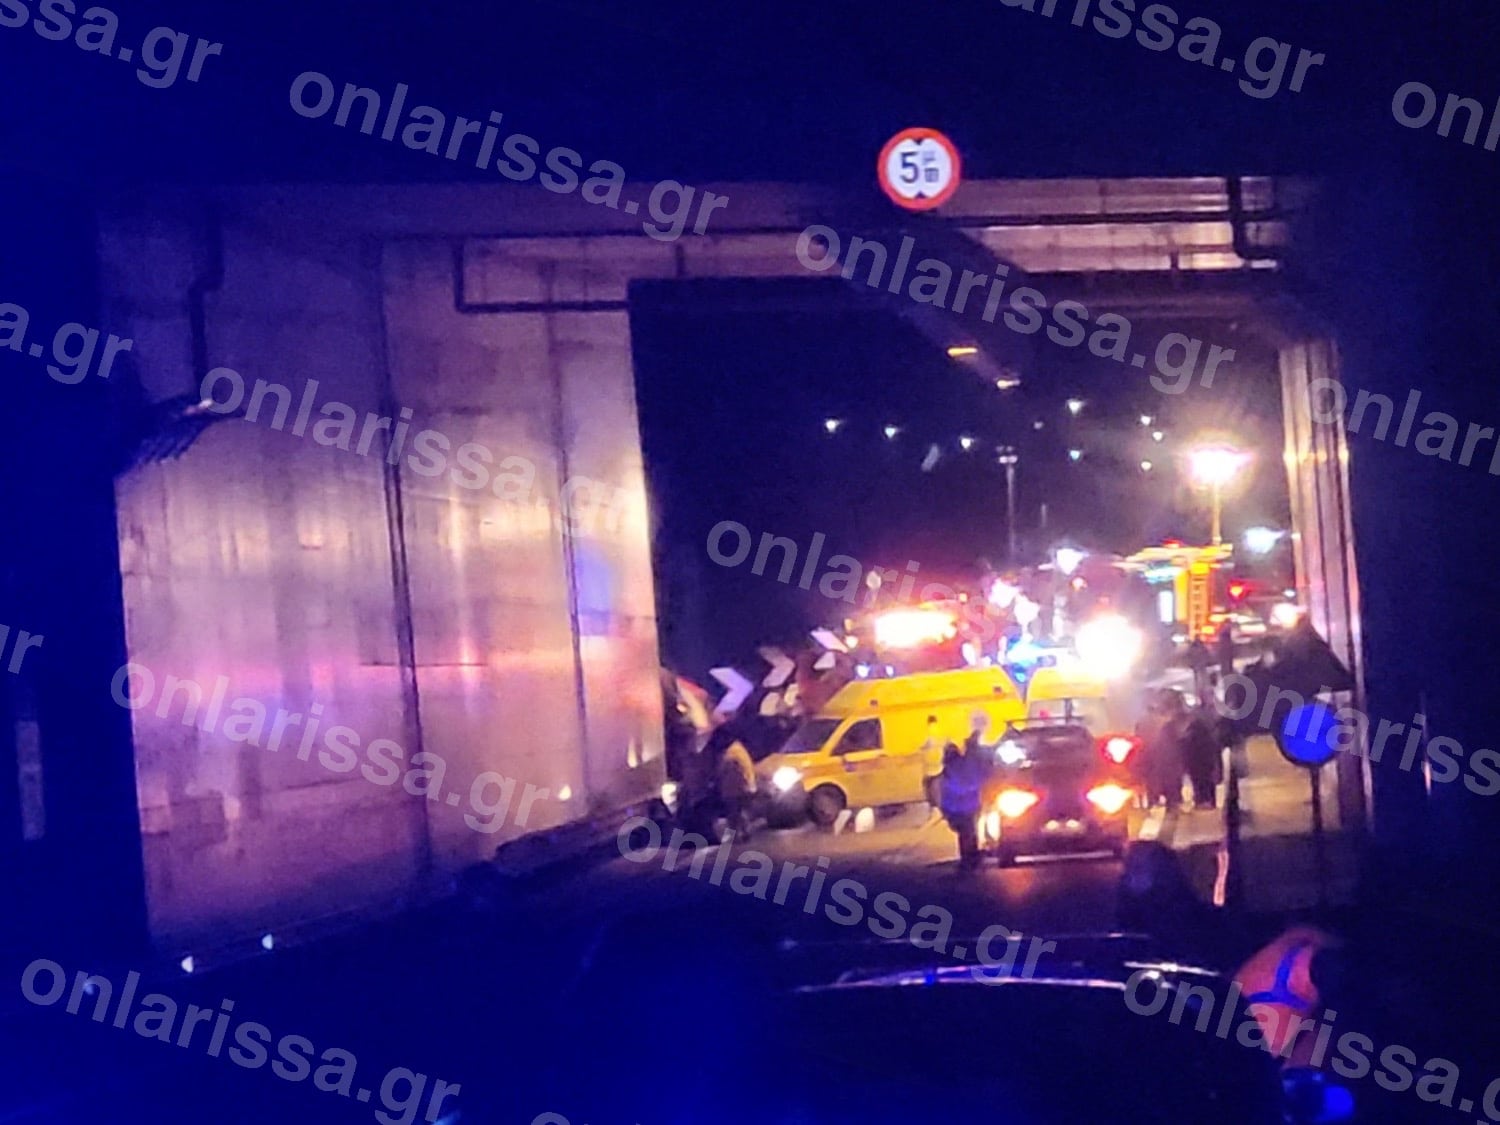 202303010034500710 - Τραγωδία στα Τέμπη: Σύγκρουση τρένων, αναφορές για 8 νεκρούς και δεκάδες τραυματίες! (εικόνες & βίντεο)